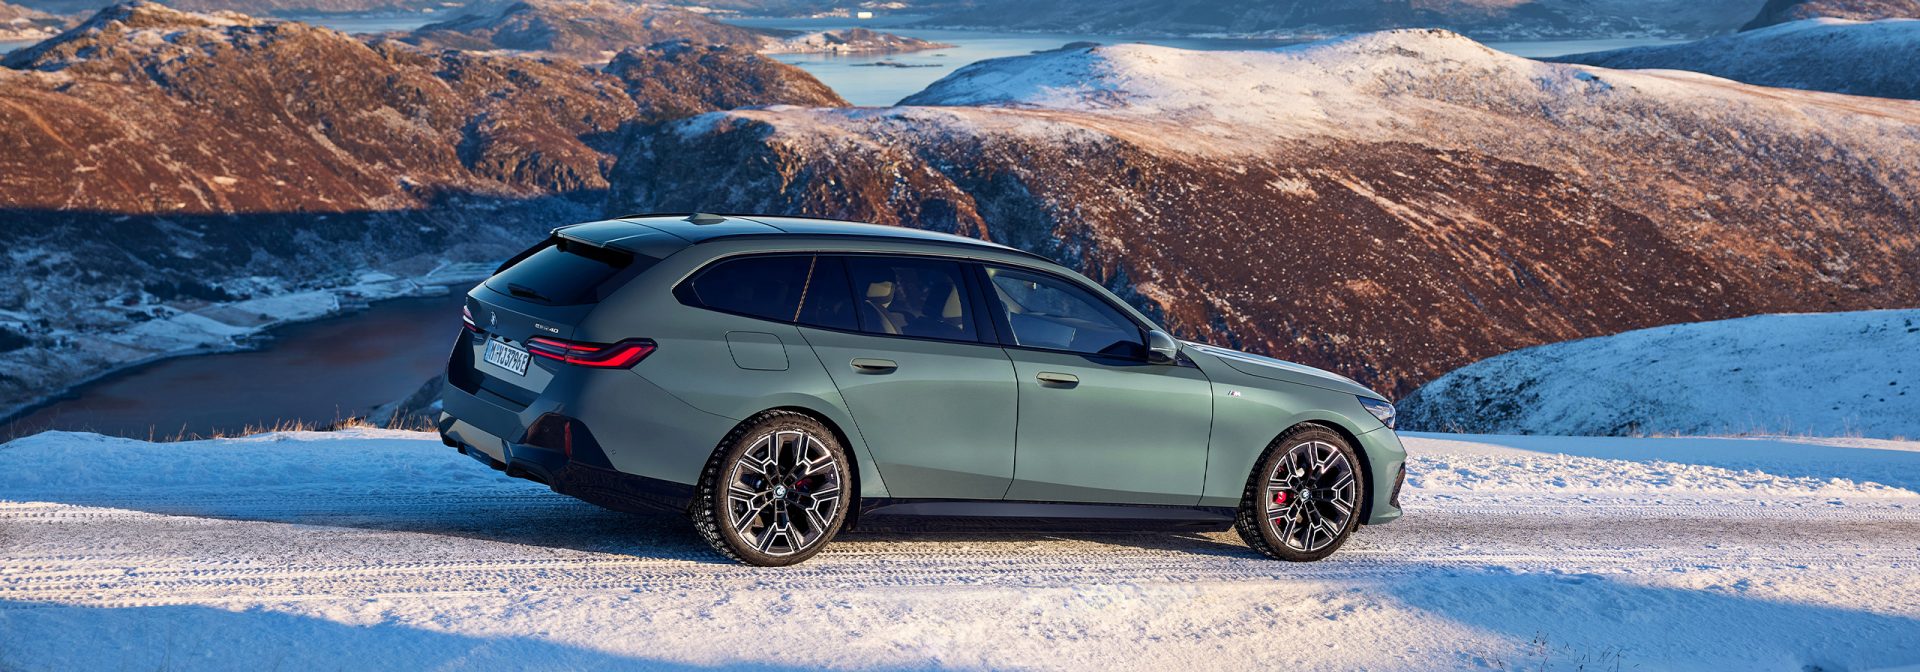 Ein metallic-grüner BMW i5 Touring auf einer verschneiten Straße vor Bergkulisse.